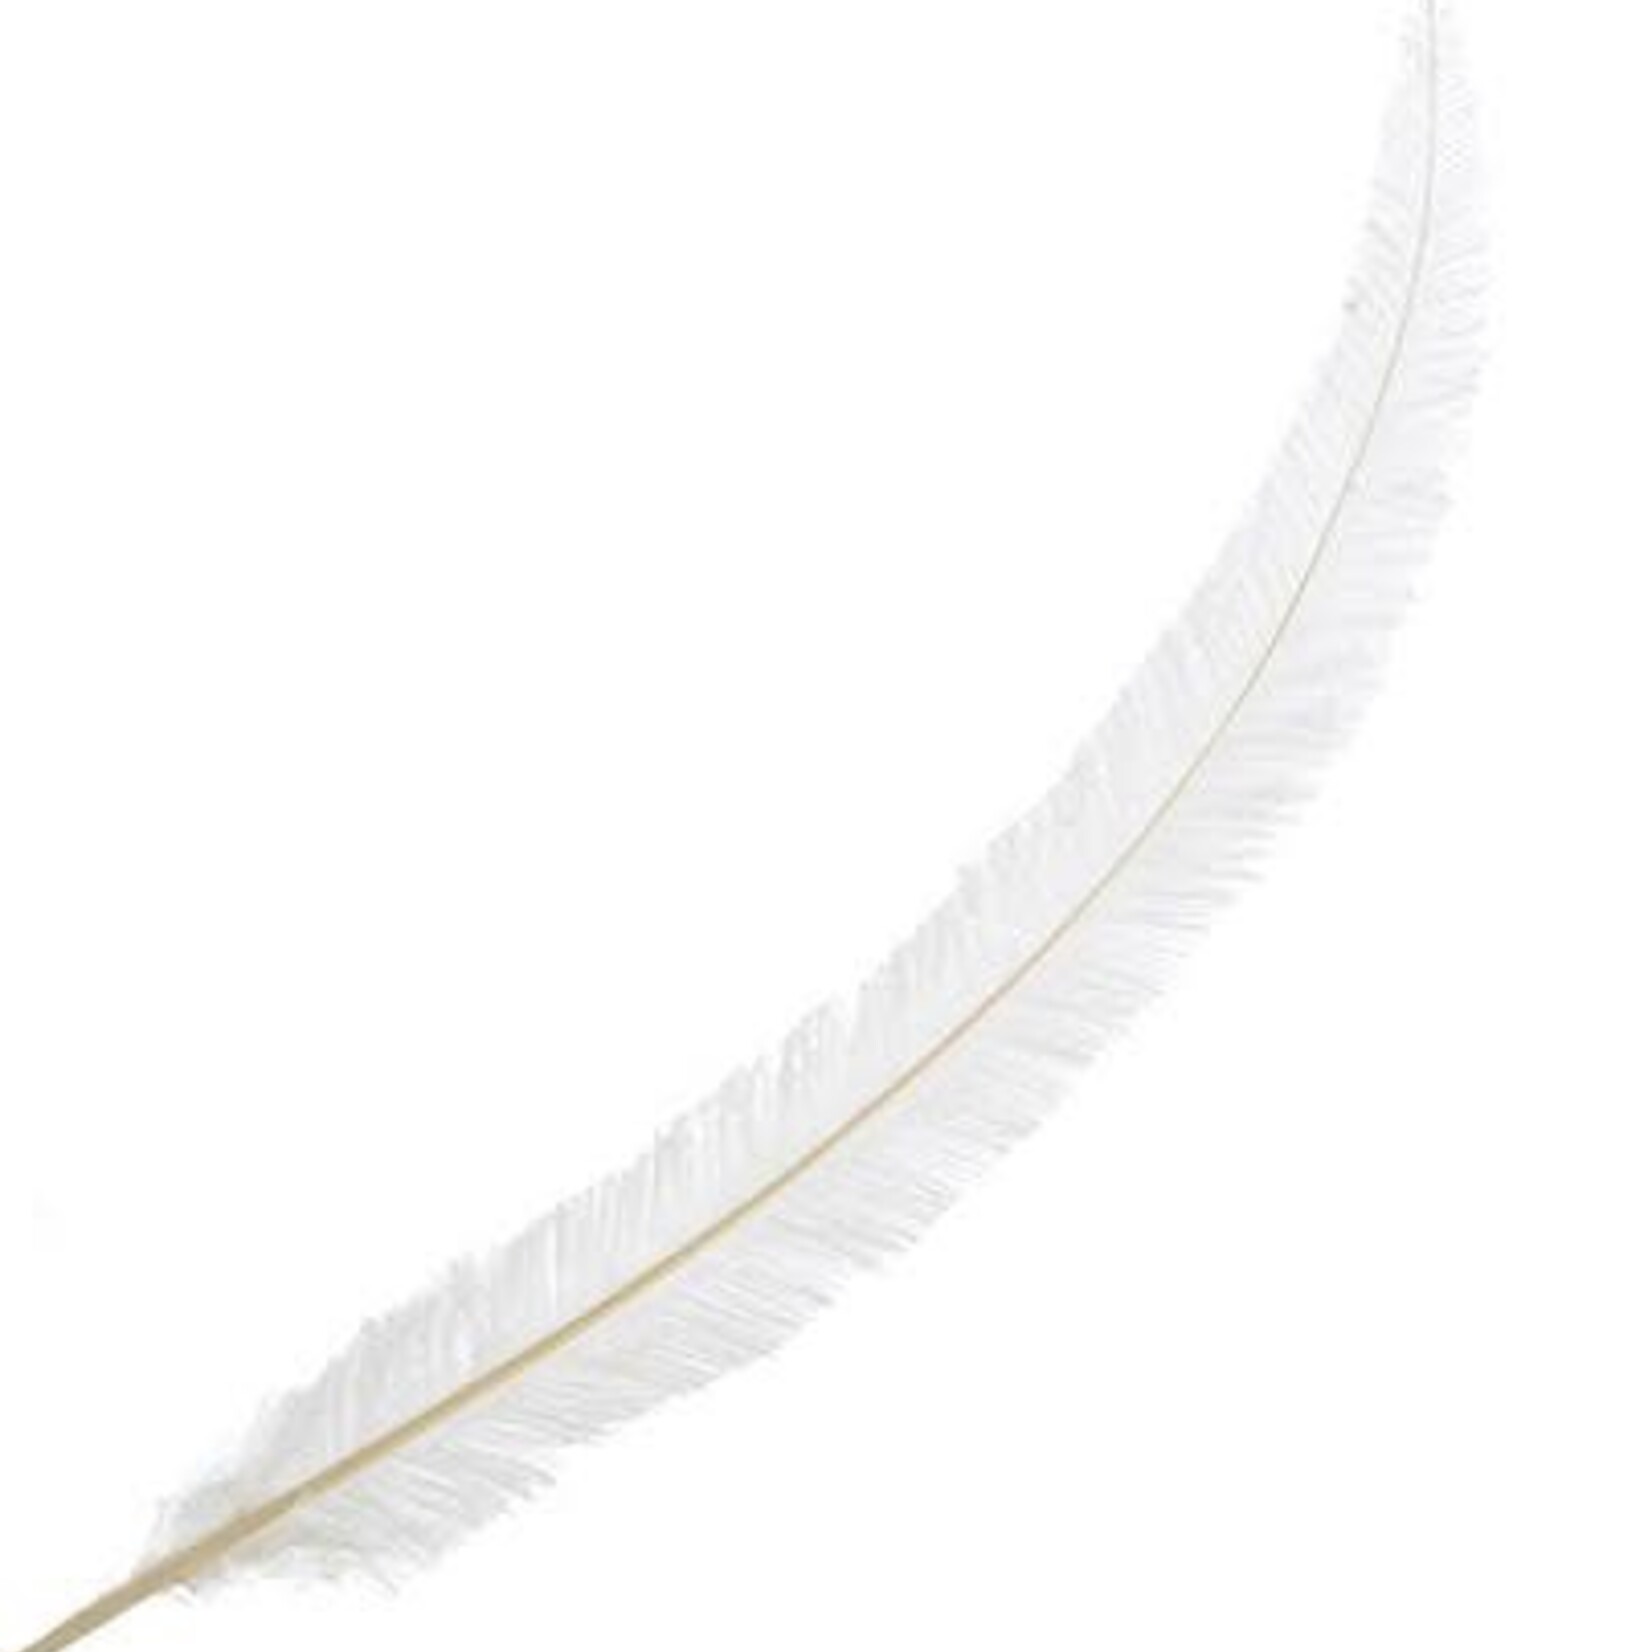 Nandu Feathers 20-25 Inch